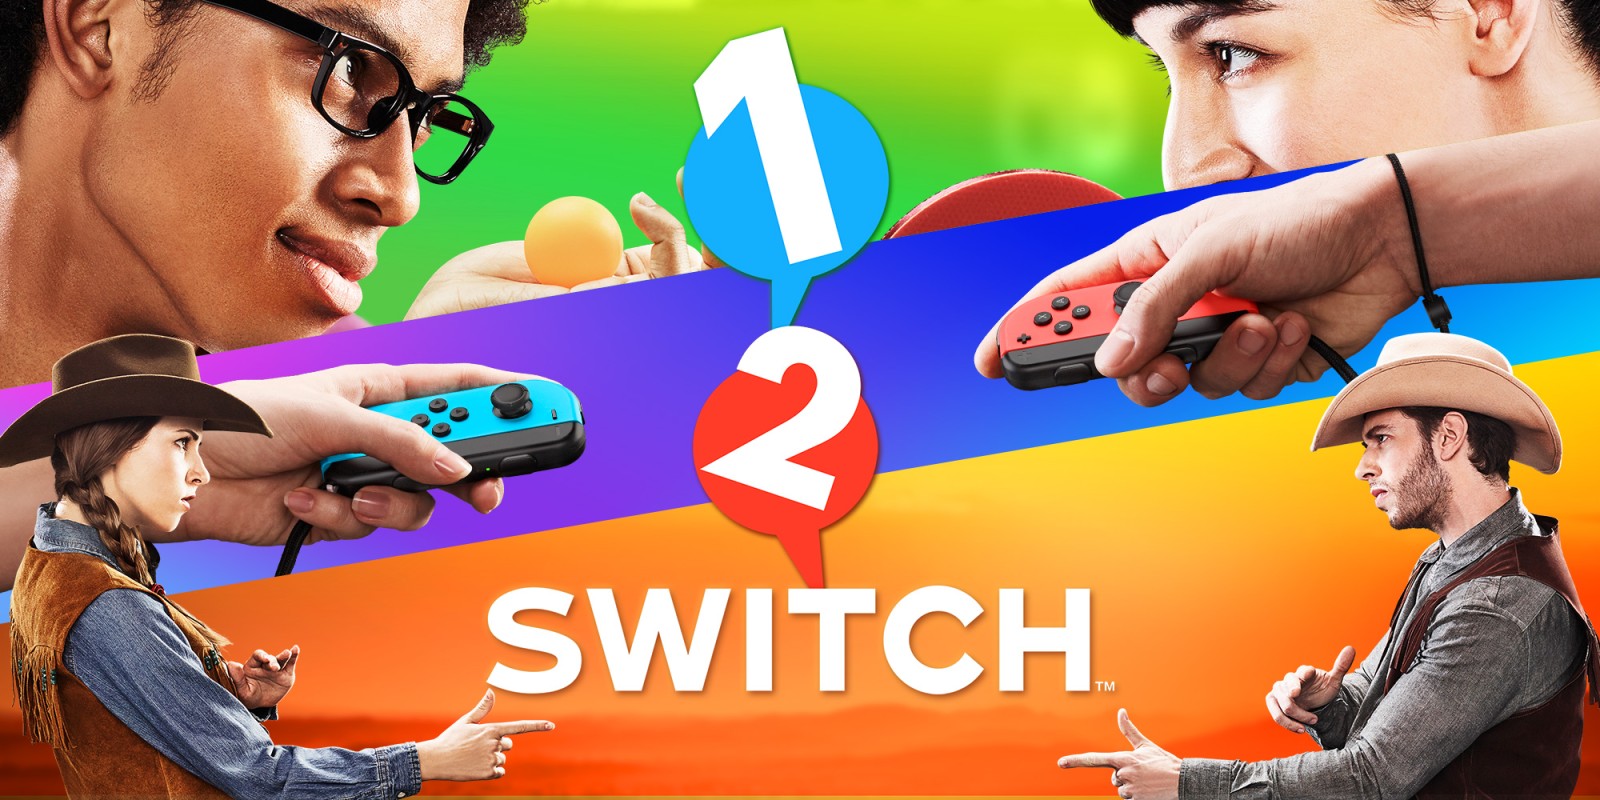 Tierras altas litro empezar 1-2-Switch | Juegos de Nintendo Switch | Juegos | Nintendo